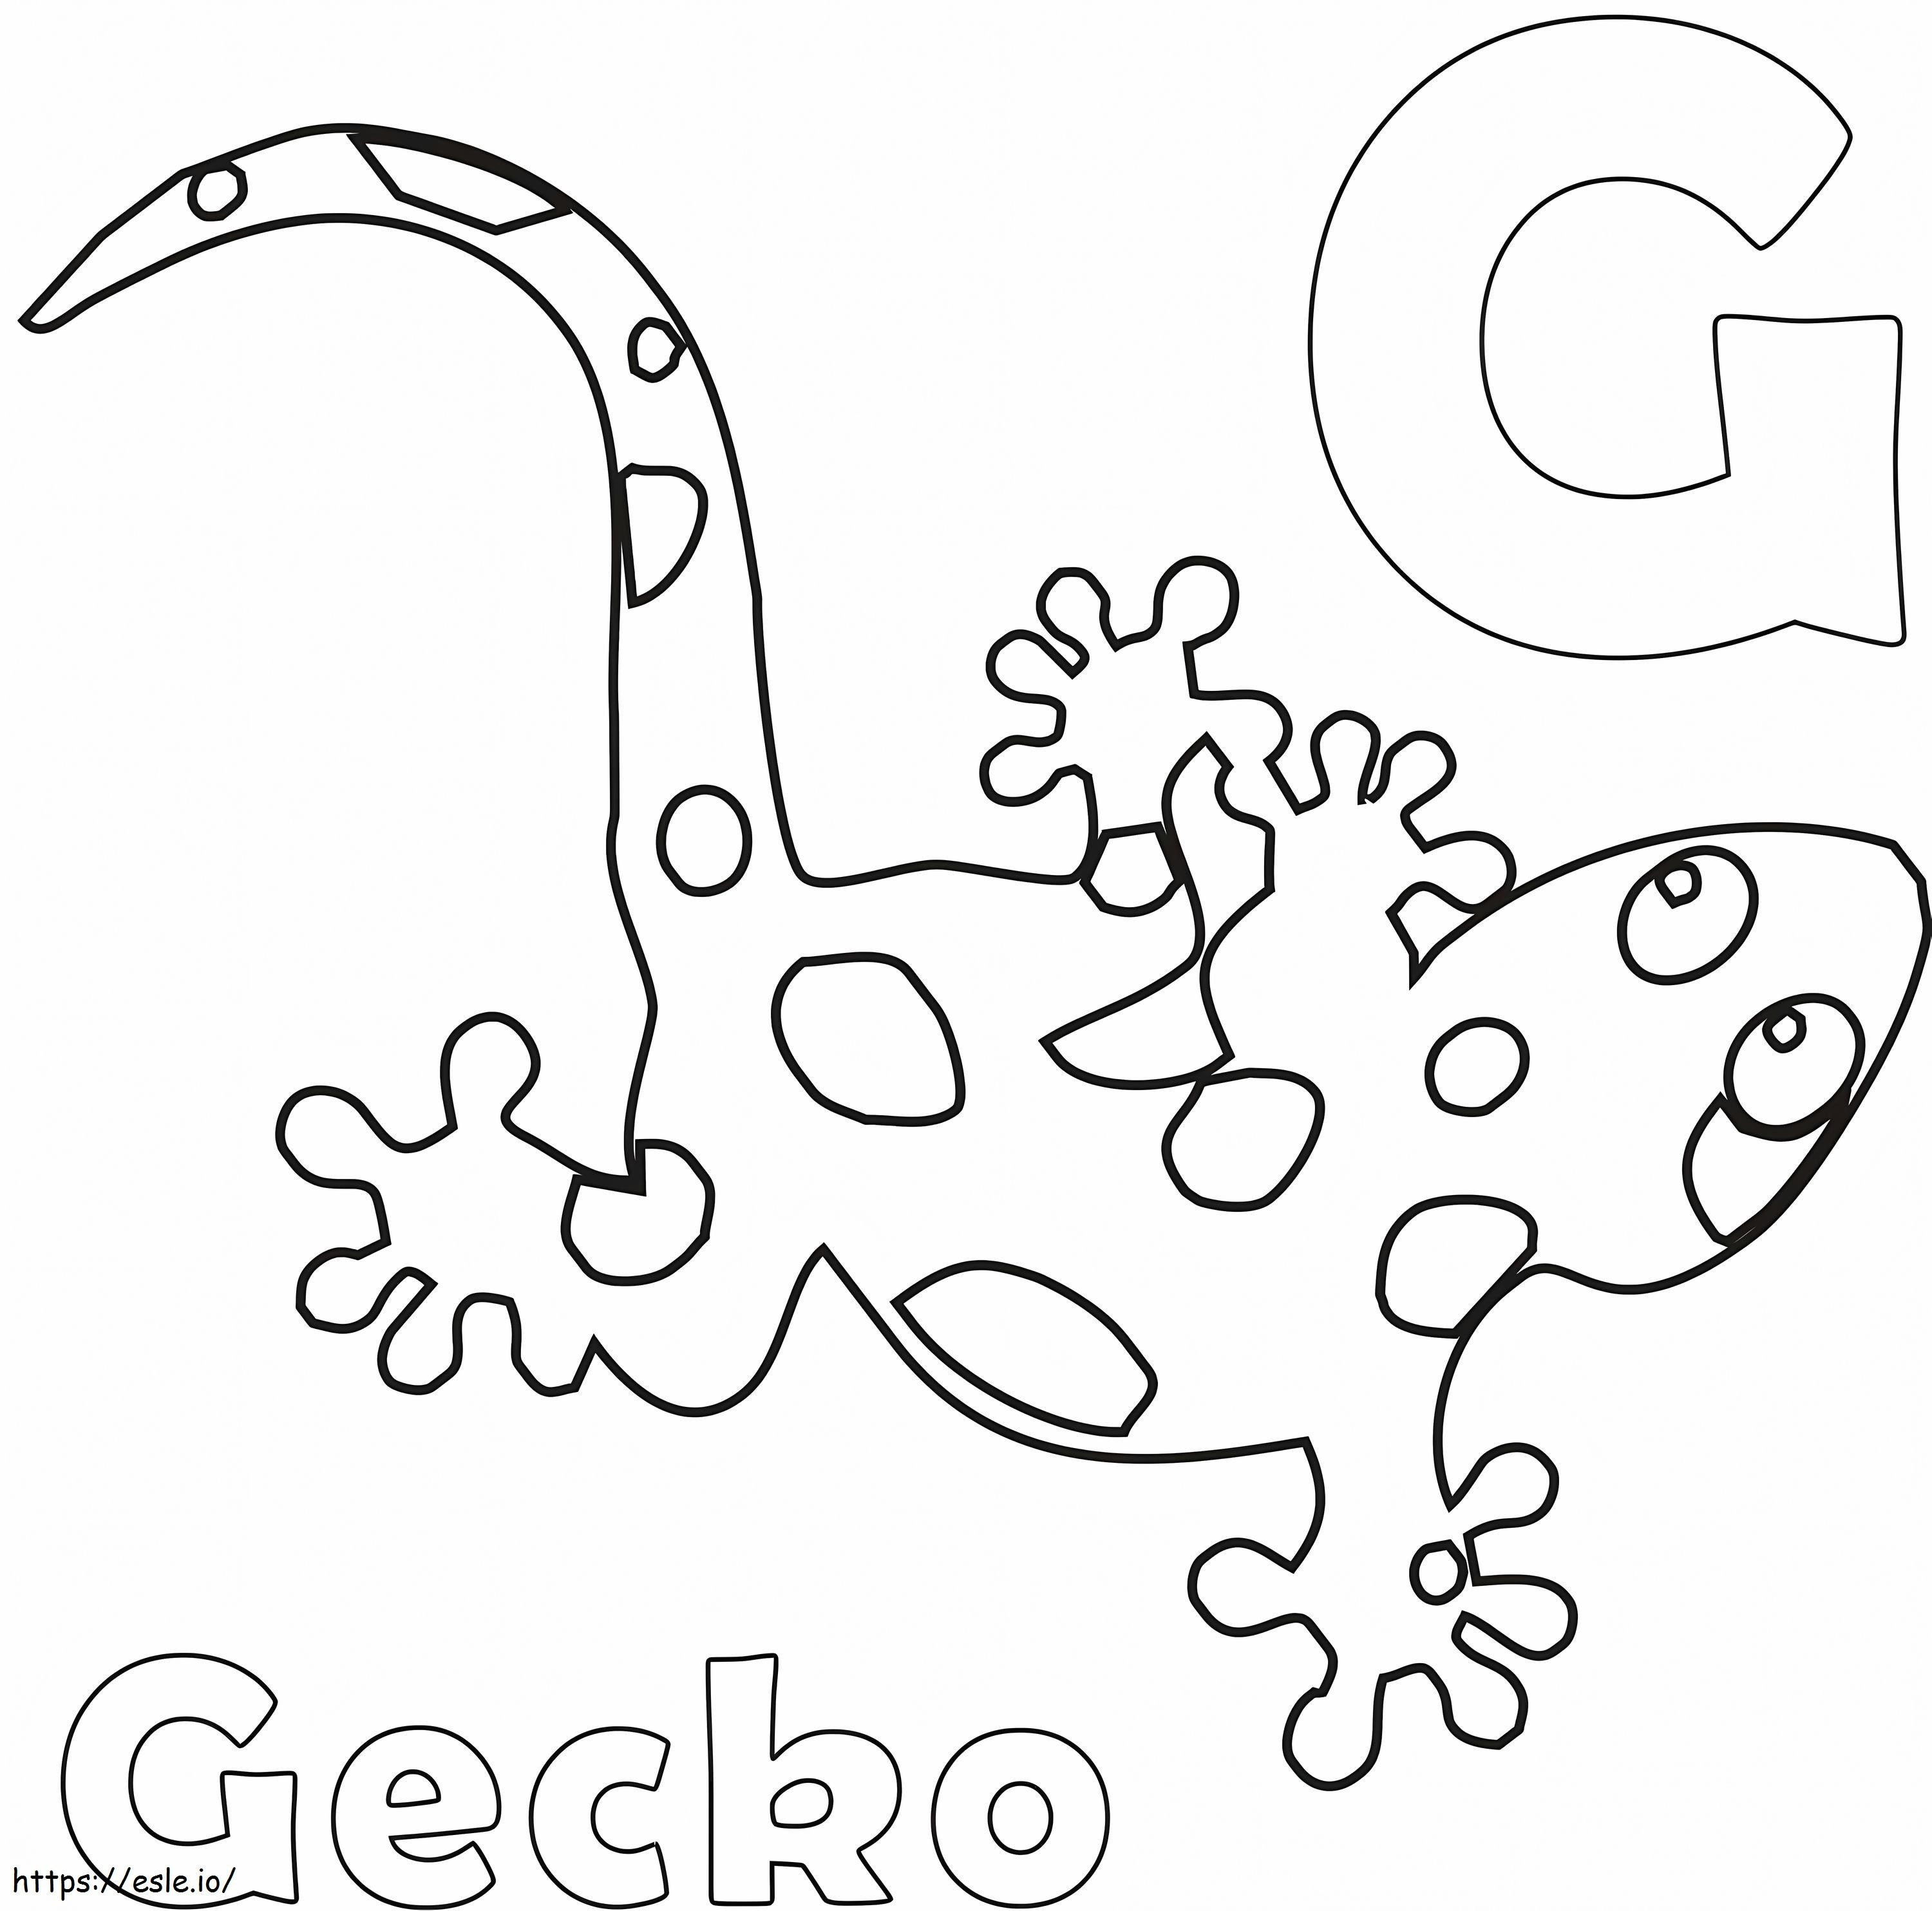 Coloriage Lettre G et Gecko à imprimer dessin